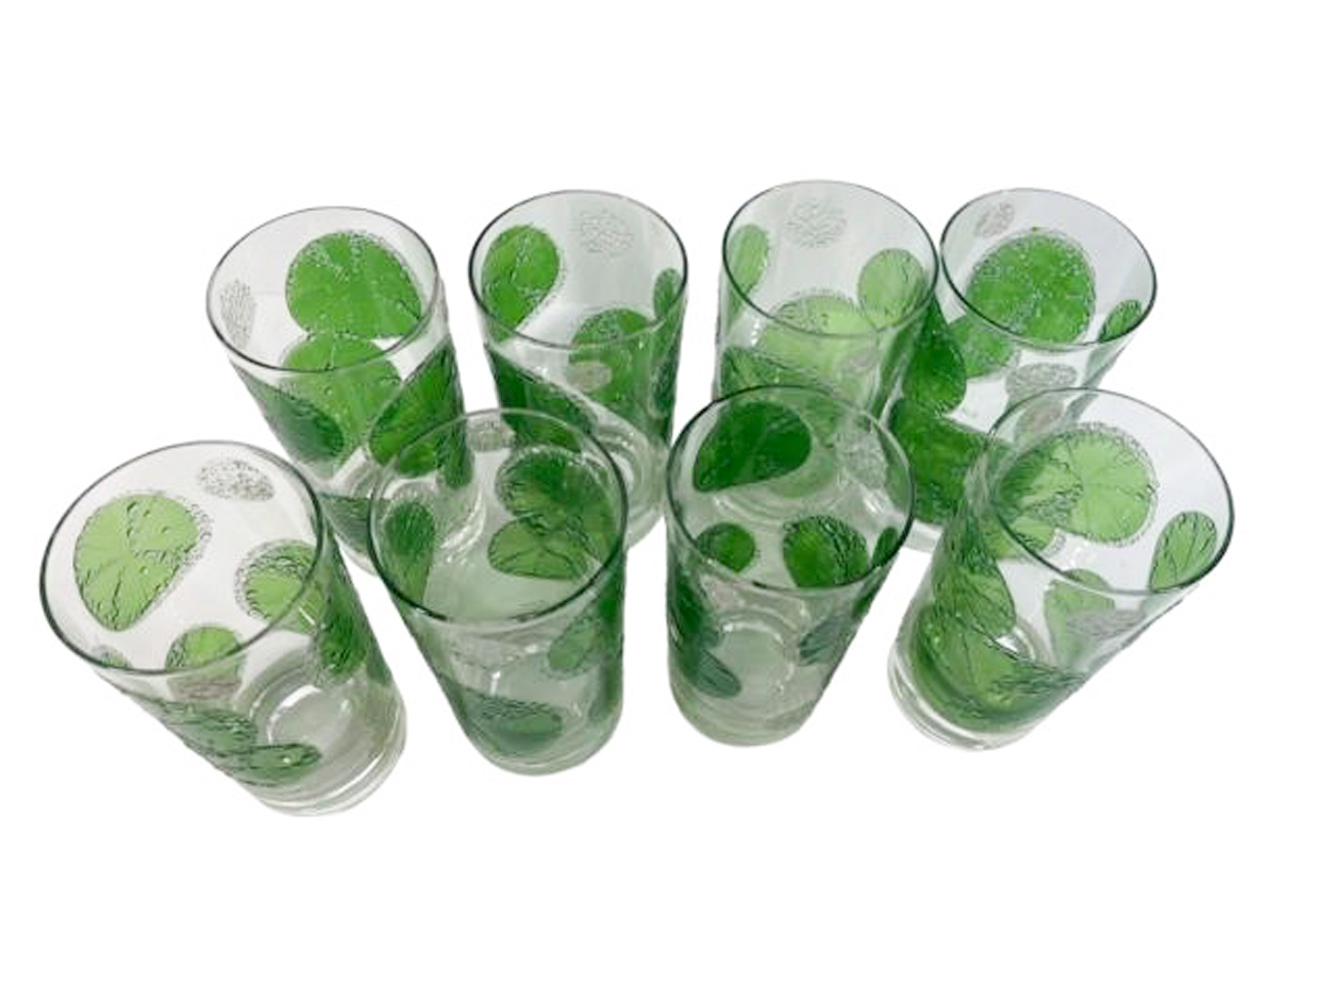 Ensemble vintage de 8 verres Fred By avec des tranches de citron vert translucide agrémentées de perles en relief de bords givrés transparents ressemblant à des perles et des bulles d'eau, ainsi qu'un caddy à poignée rectangulaire avec une finition